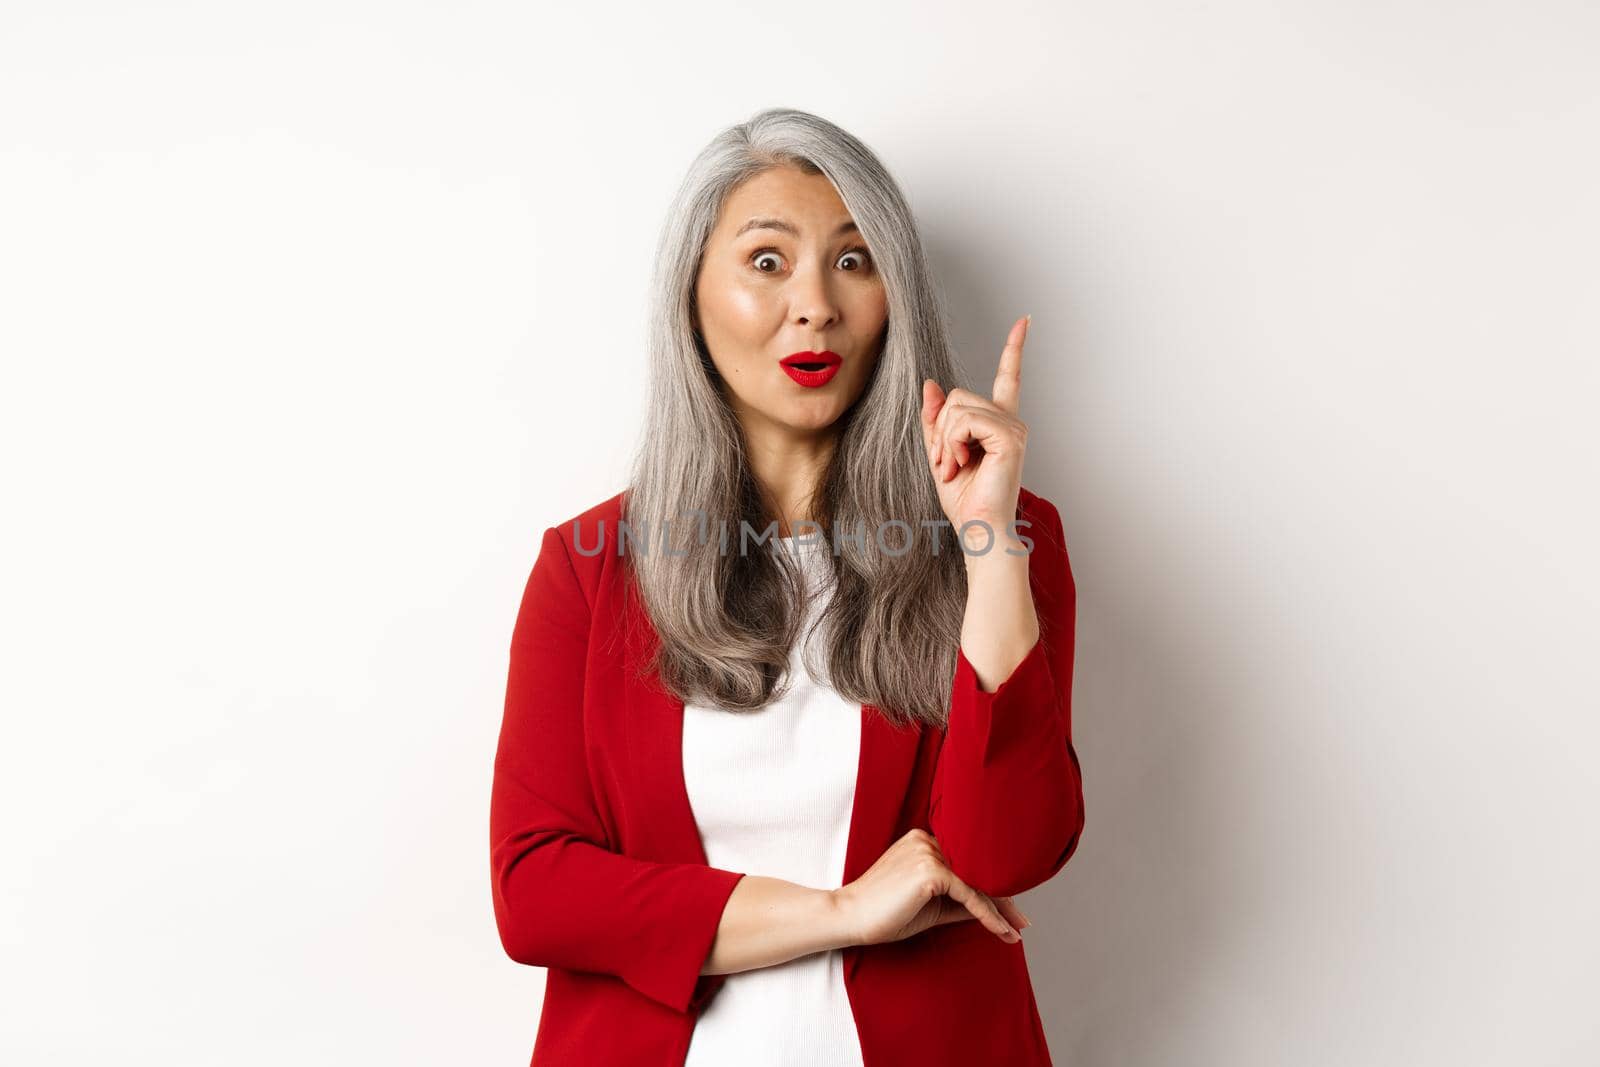 Elderly asian woman entrepreneur in red blazer having an idea, suggesting something, raising finger in eureka gesture, standing over white background.